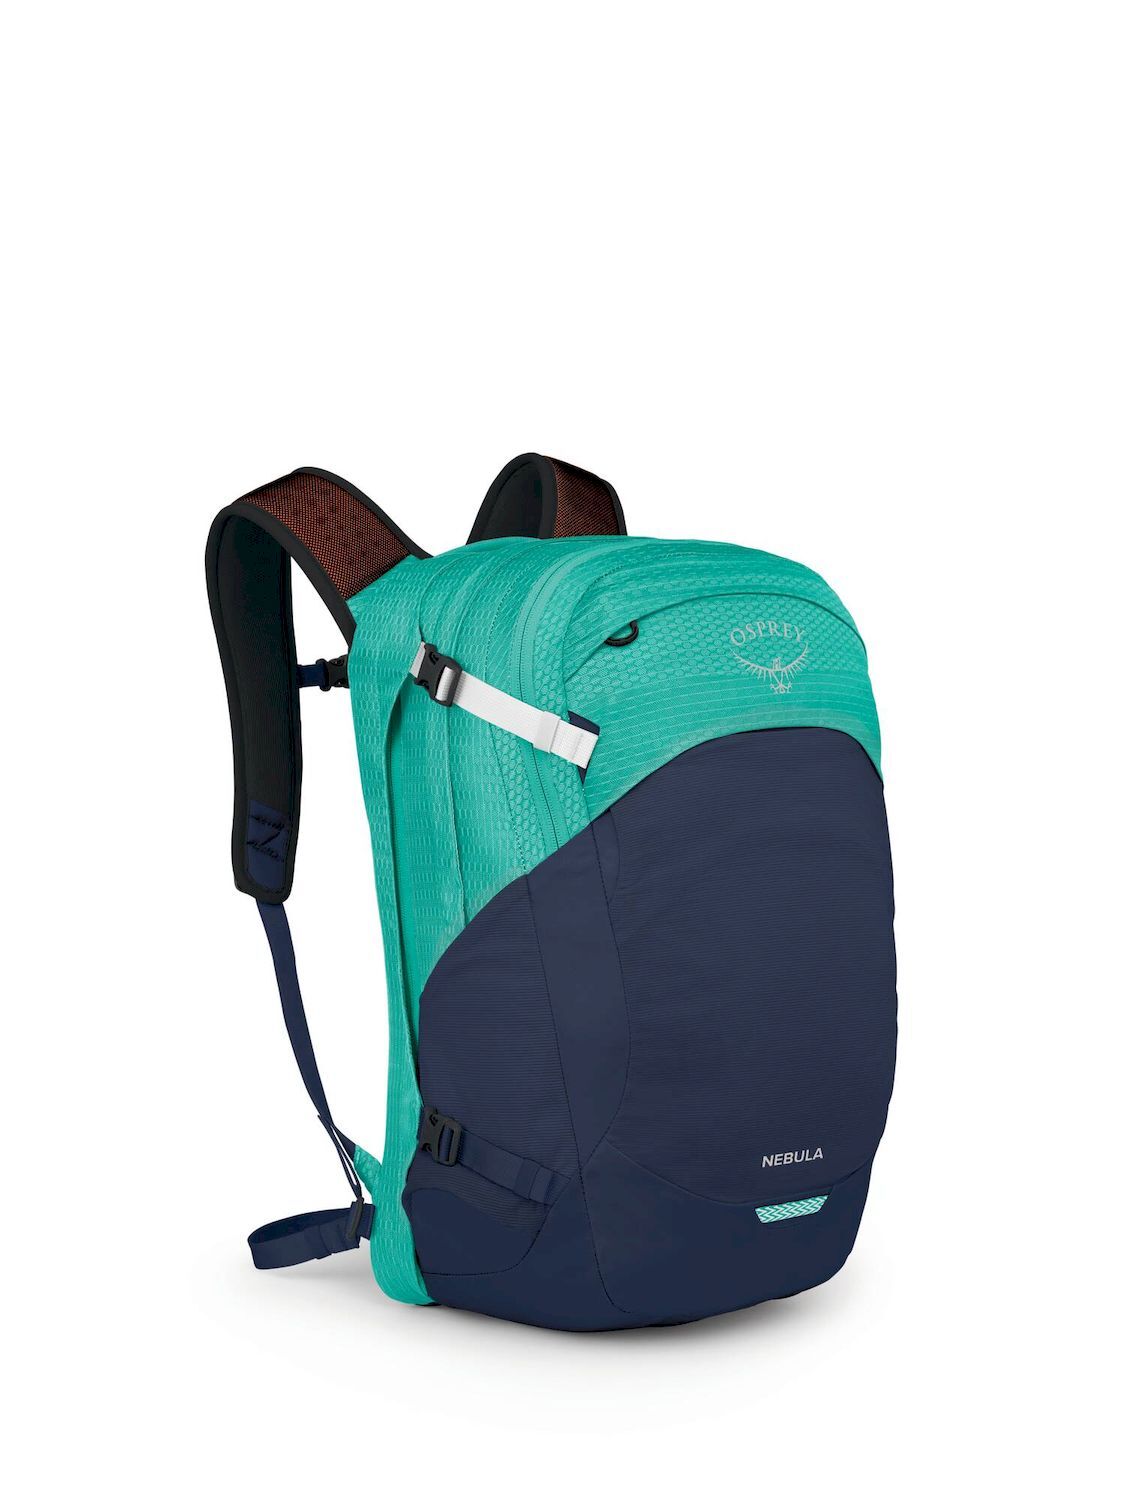 Osprey Nebula - Backpack - Men's